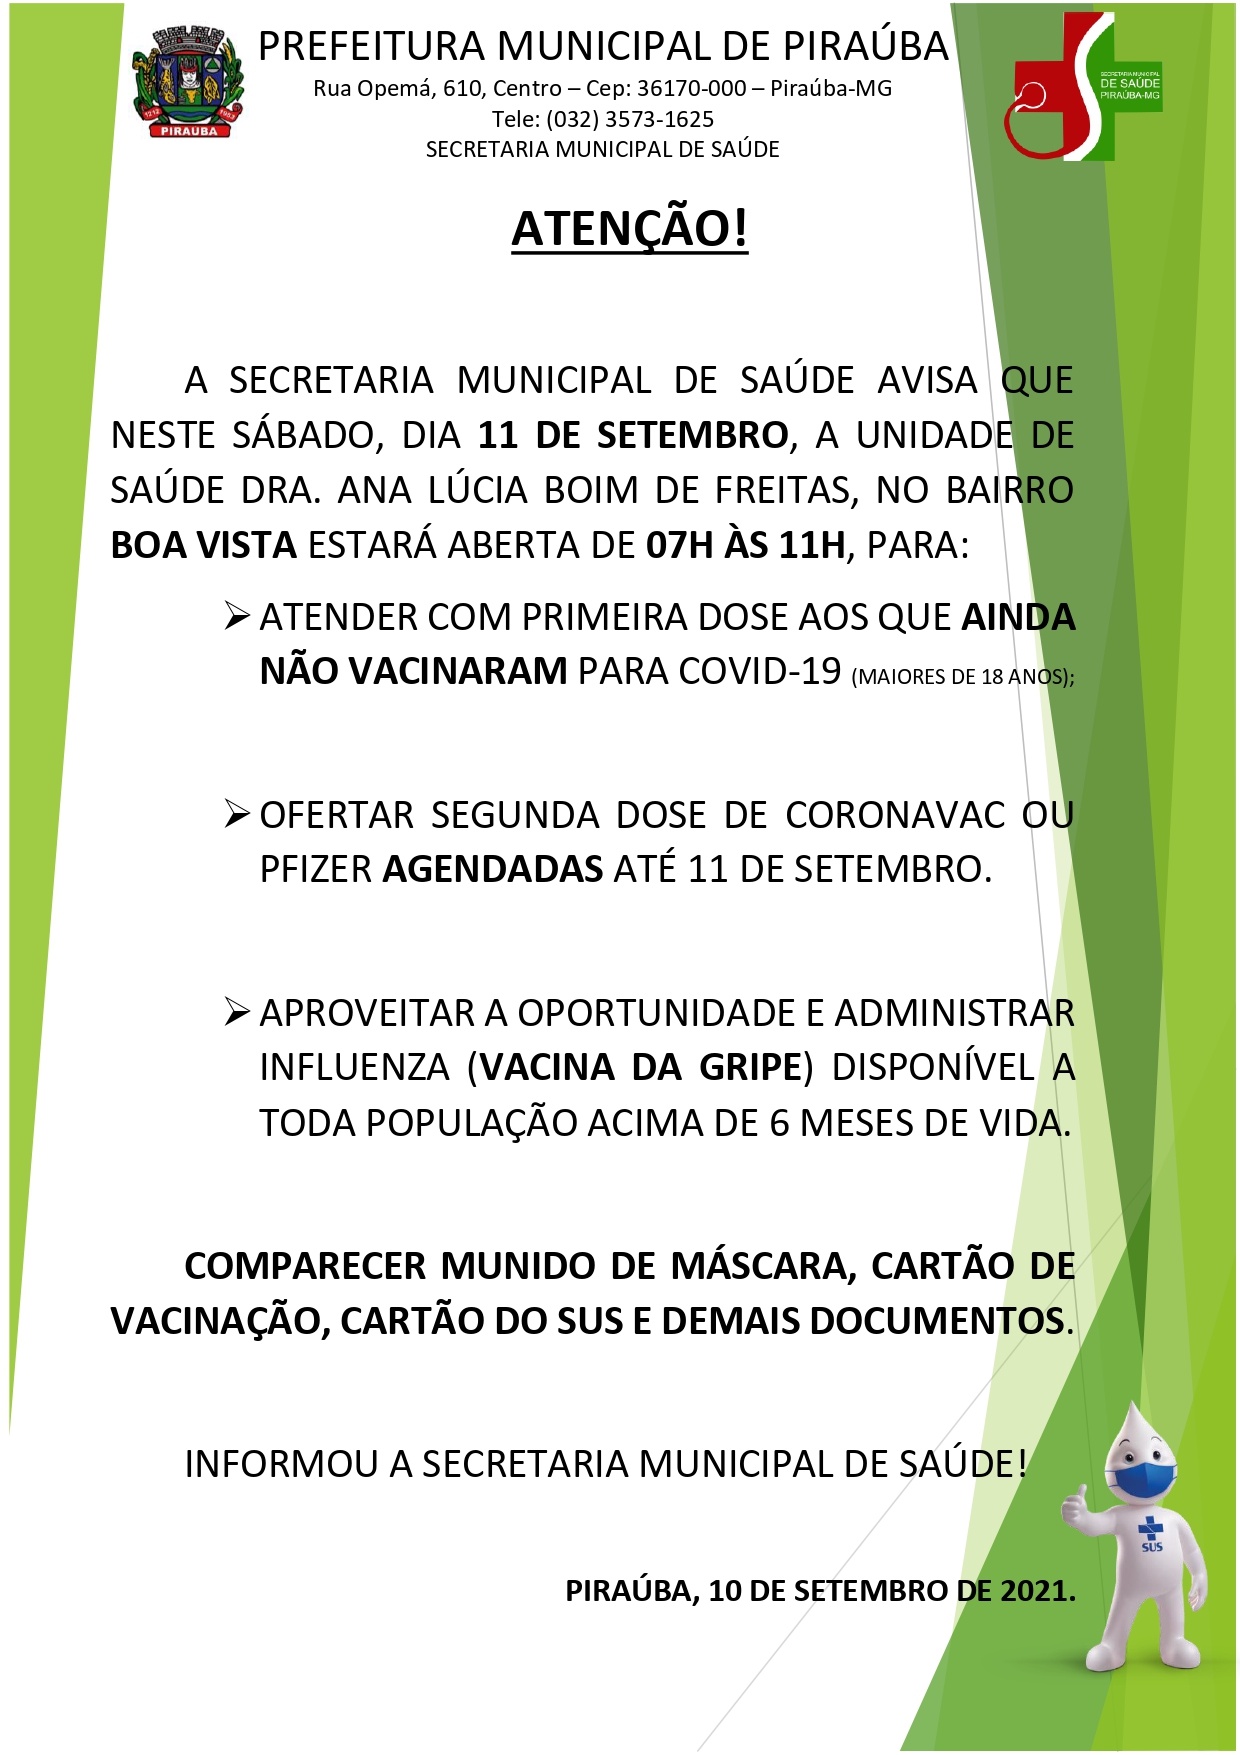 INFORMAÇÃO VACINA COVID-19 E INFLUENZA NO SÁBADO (11/09/2021)- SMS PIRAÚBA